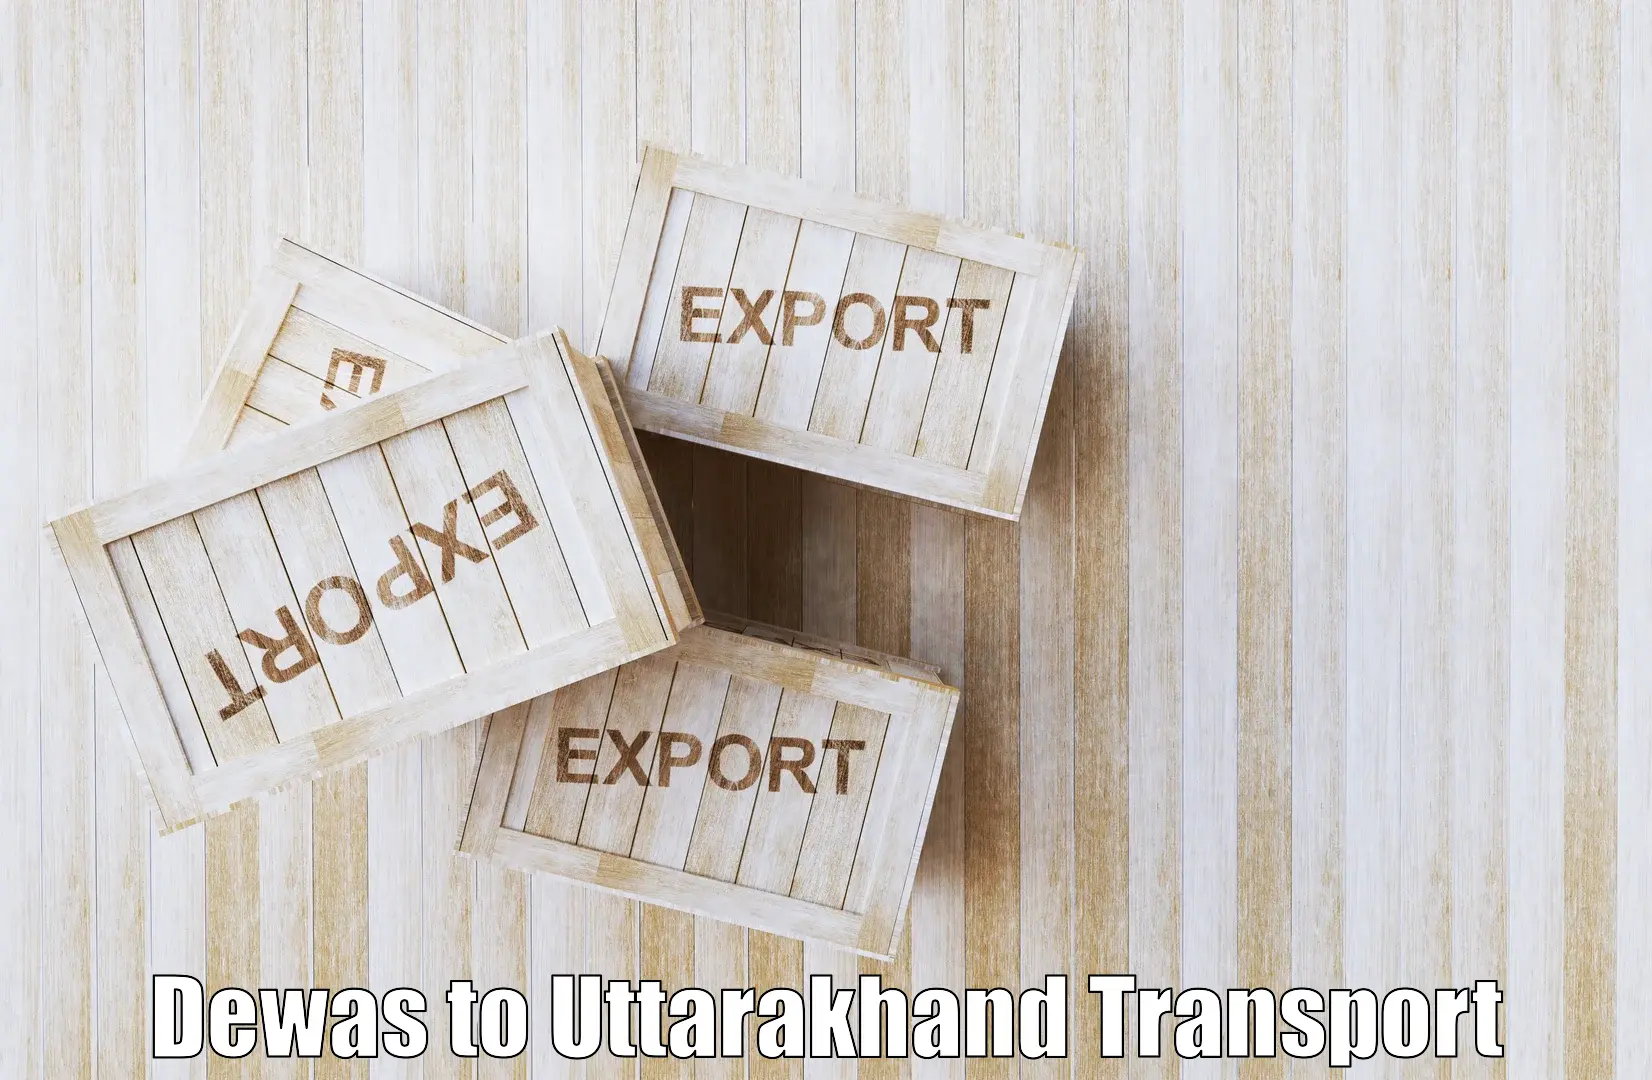 Express transport services Dewas to Uttarakhand